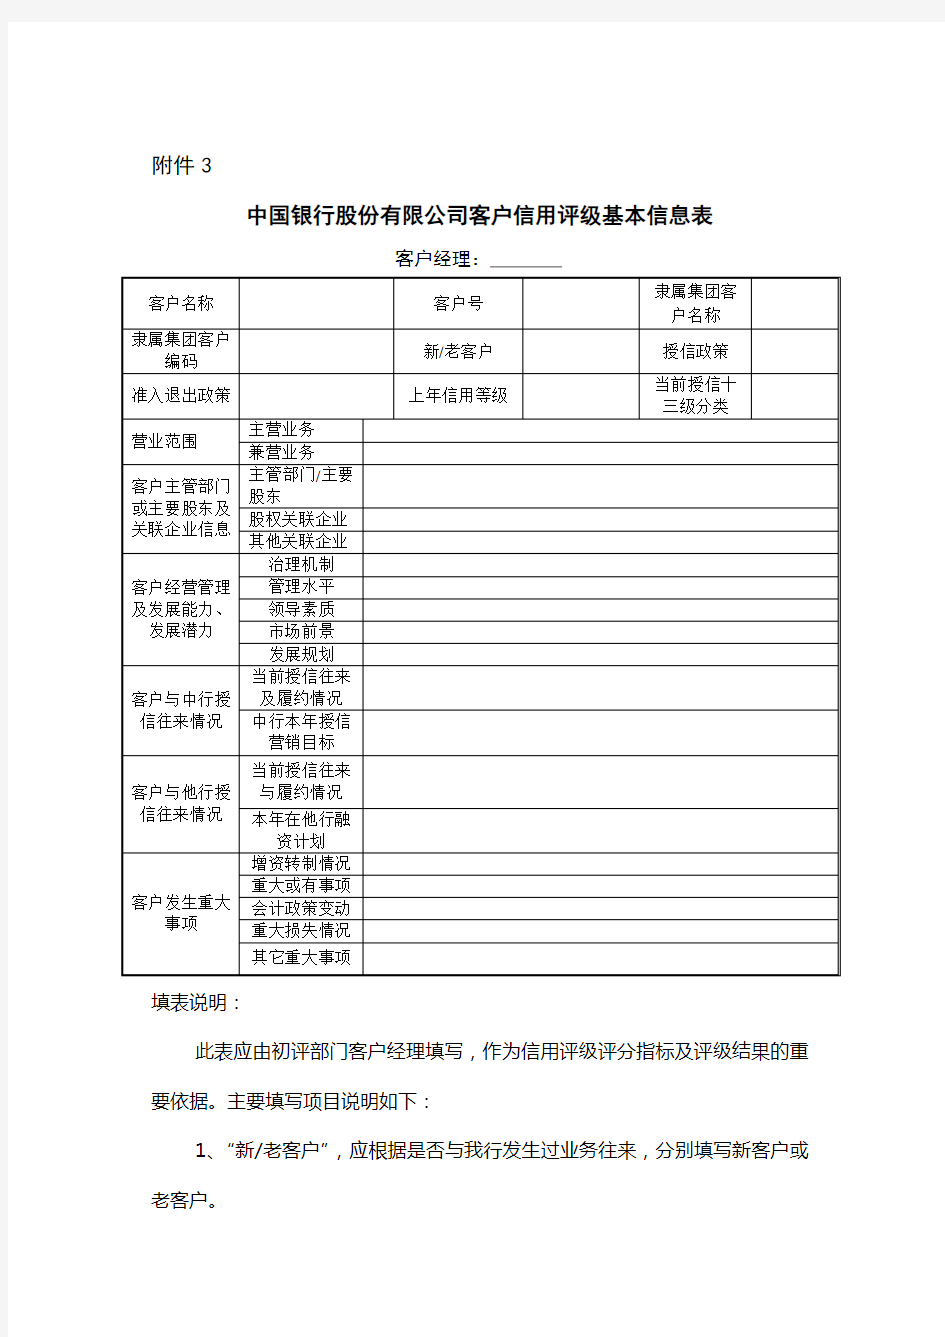 中国银行股份有限公司客户信用评级基本信息表